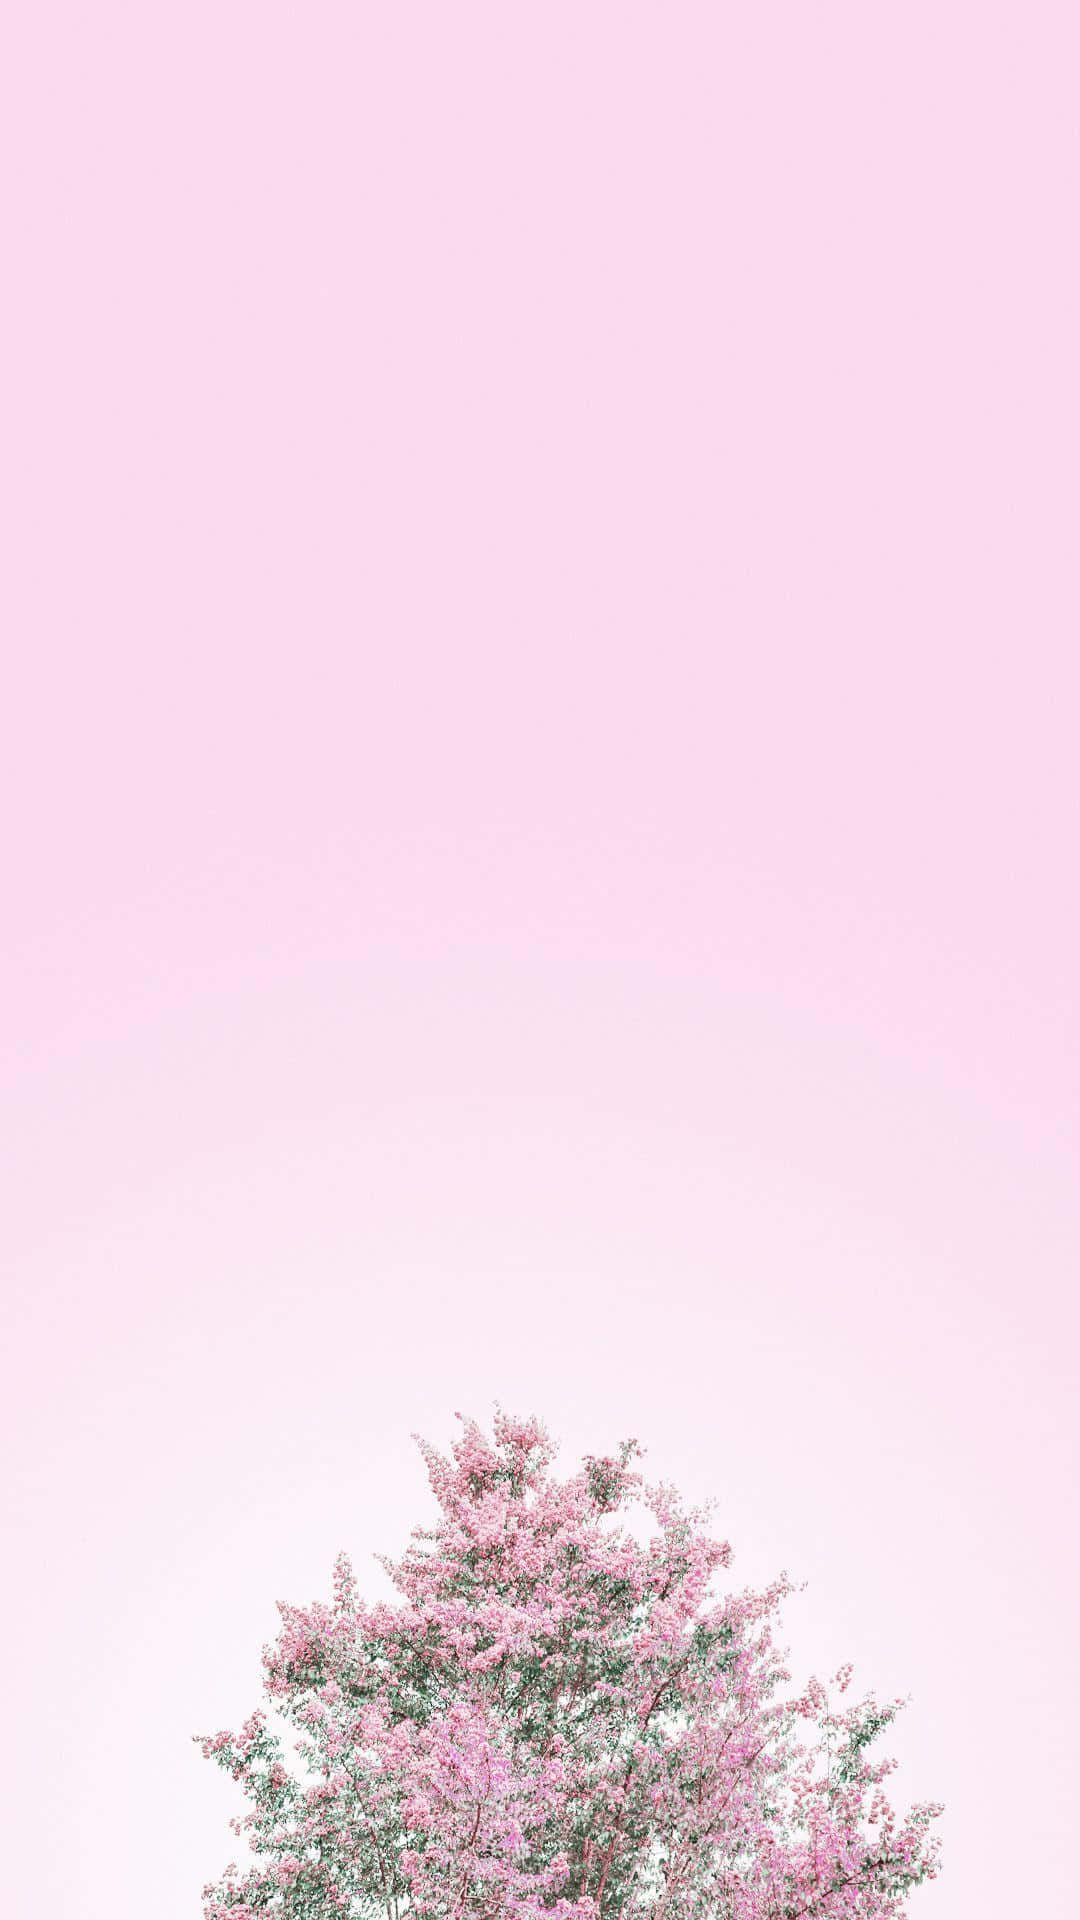 Unosfondo Bellissimo Nei Colori Rosa E Bianco. Sfondo